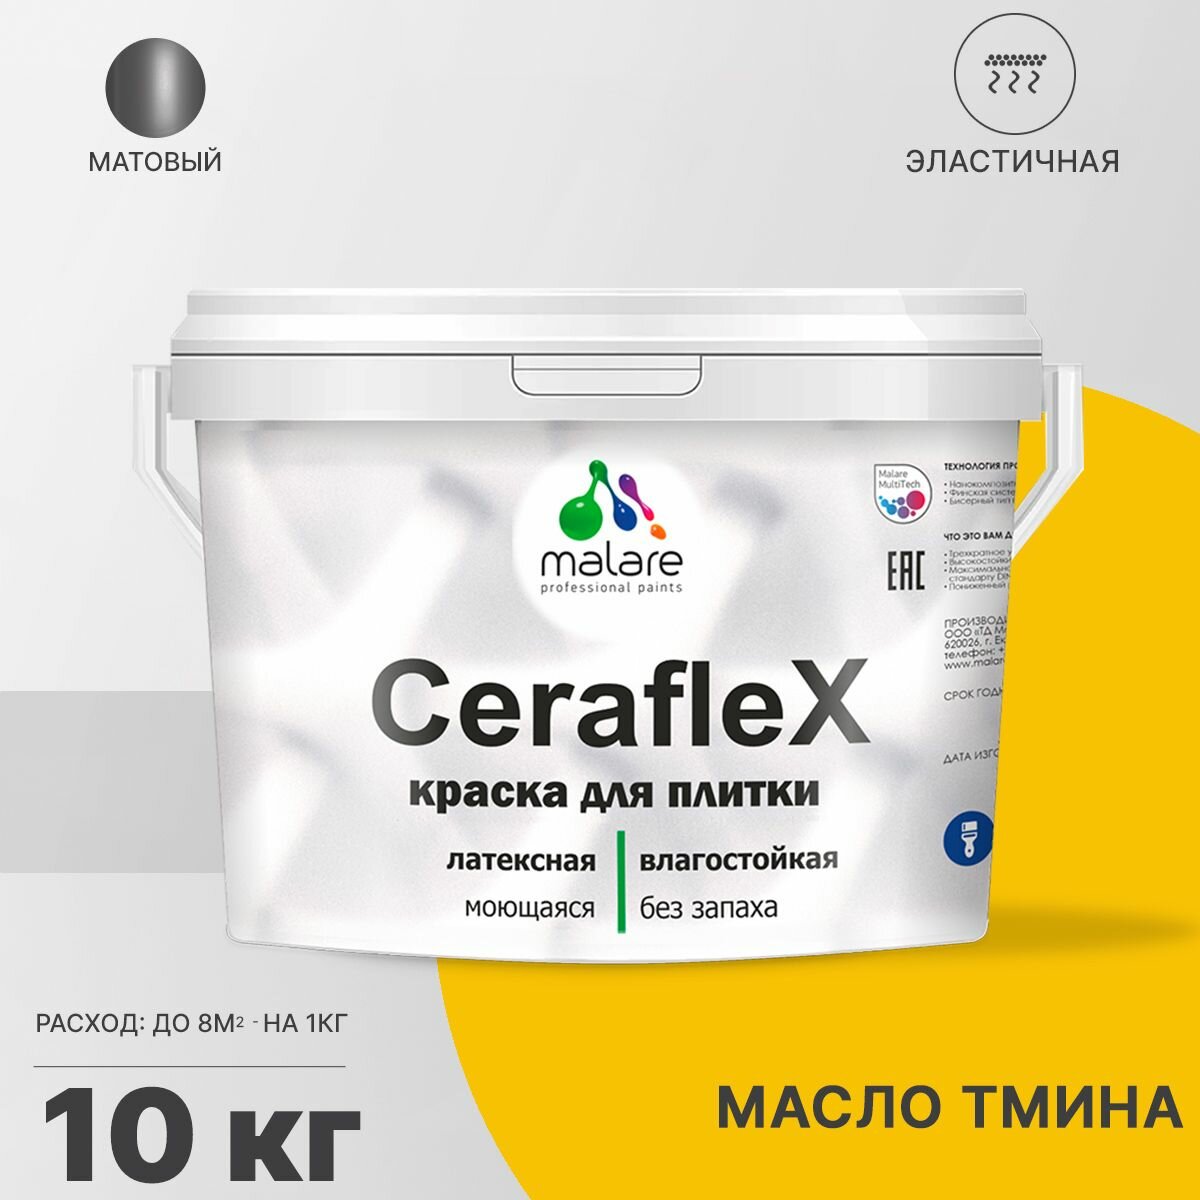 Краска резиновая Malare Ceraflex для керамической плитки, эластичная, моющаяся, быстросохнущая, без запаха, матовая, масло тмина, 10 кг.